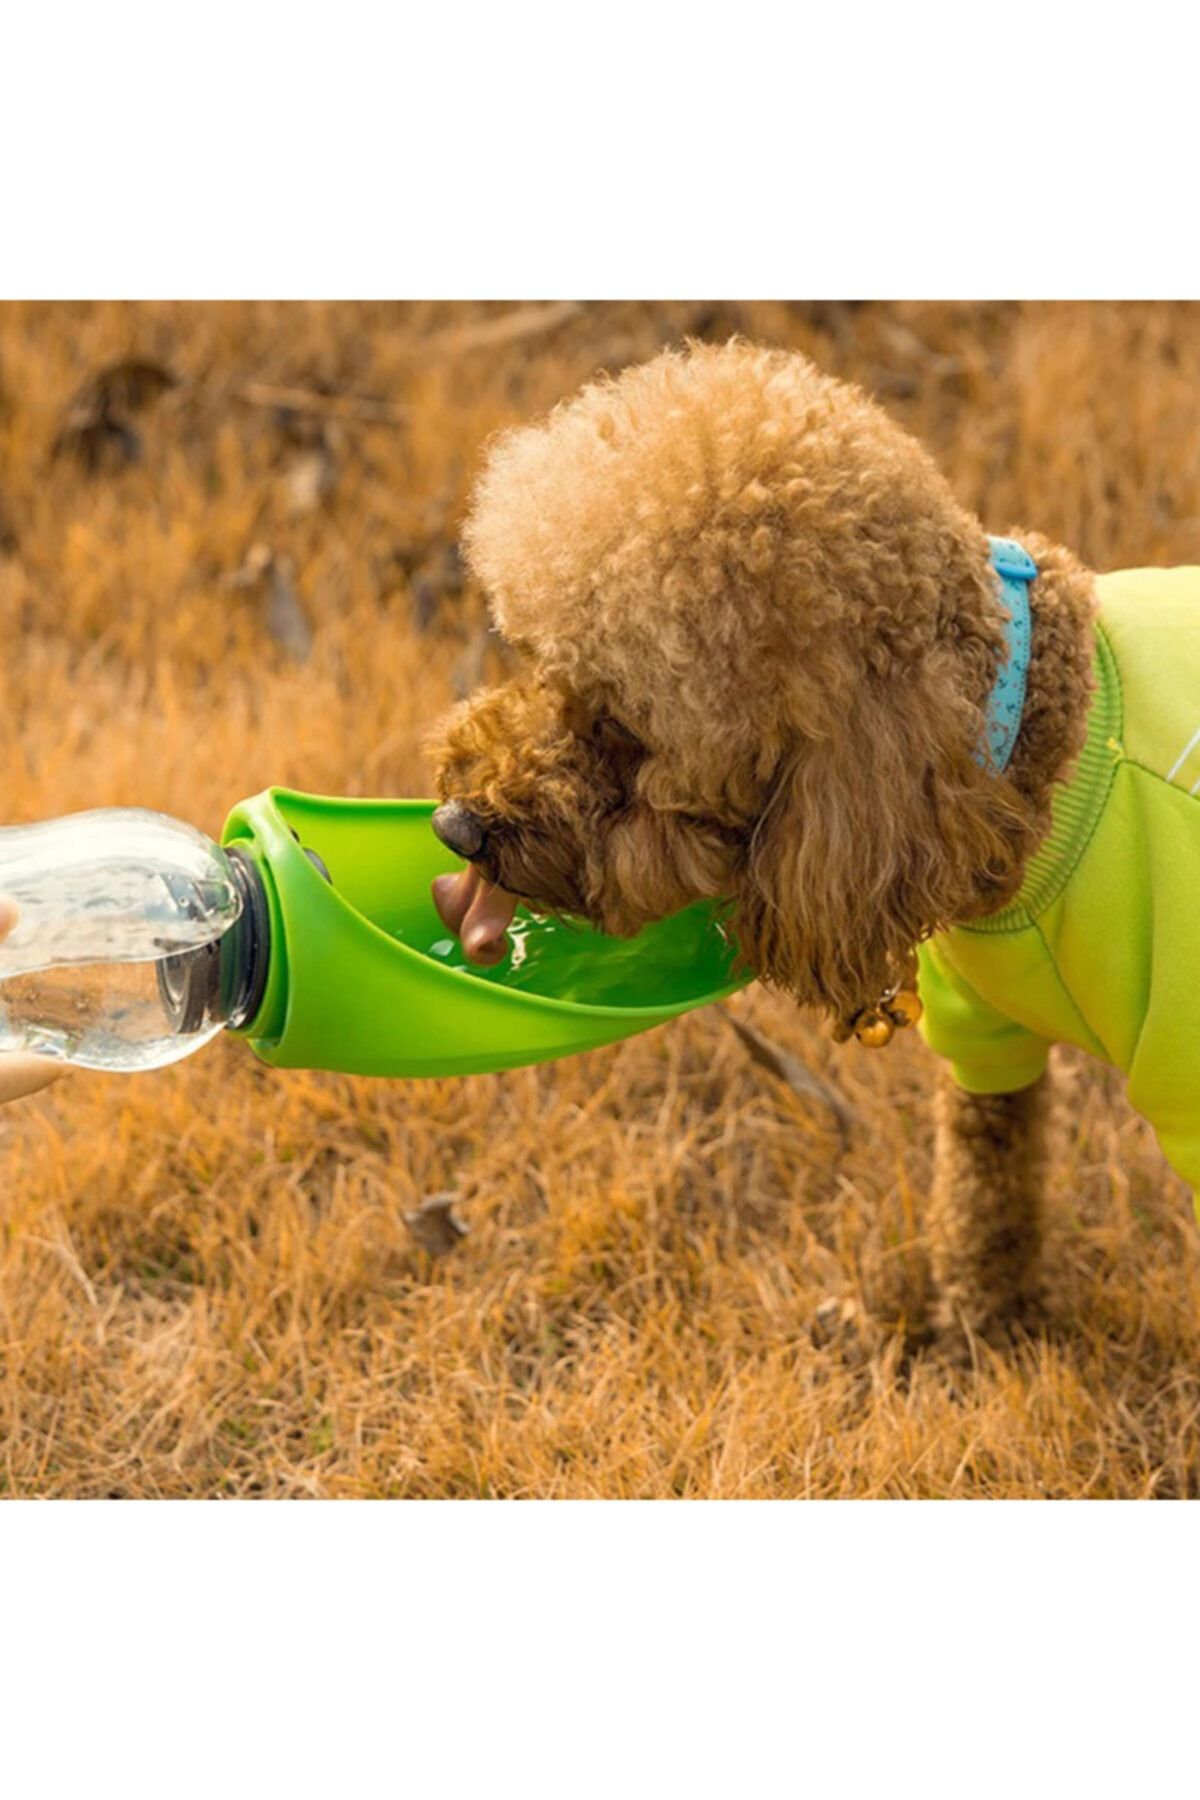 TamamElek Taşınabilir Kedi Köpek Su Şişesi Yumuşak Silikon Açık Pet Su Sebili 580ml Yeşil Renklı